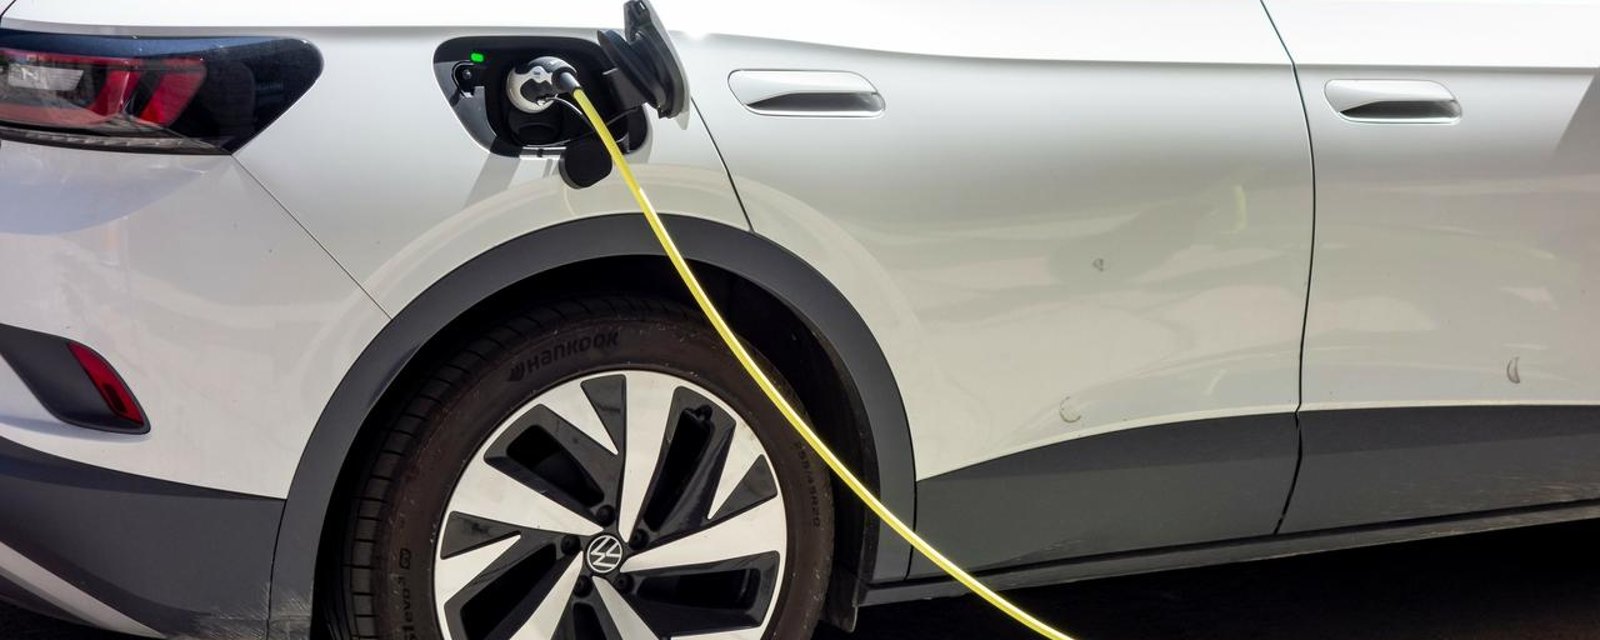 Les constructeurs automobiles vont bientôt être obligés de vendre plus de voitures électriques